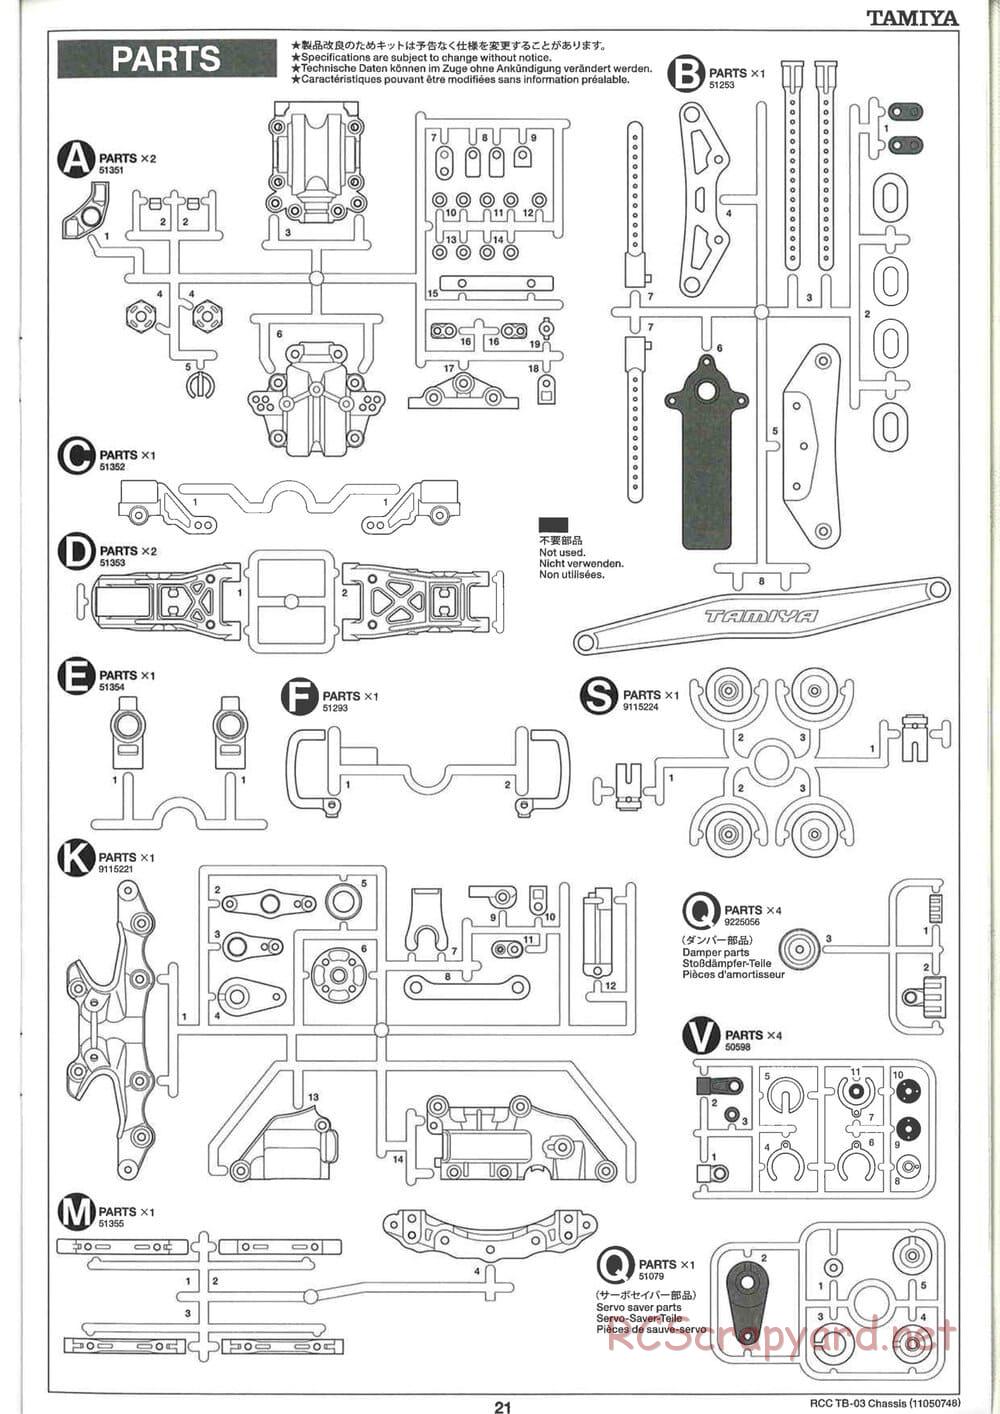 Tamiya - TB-03 Chassis - Manual - Page 21